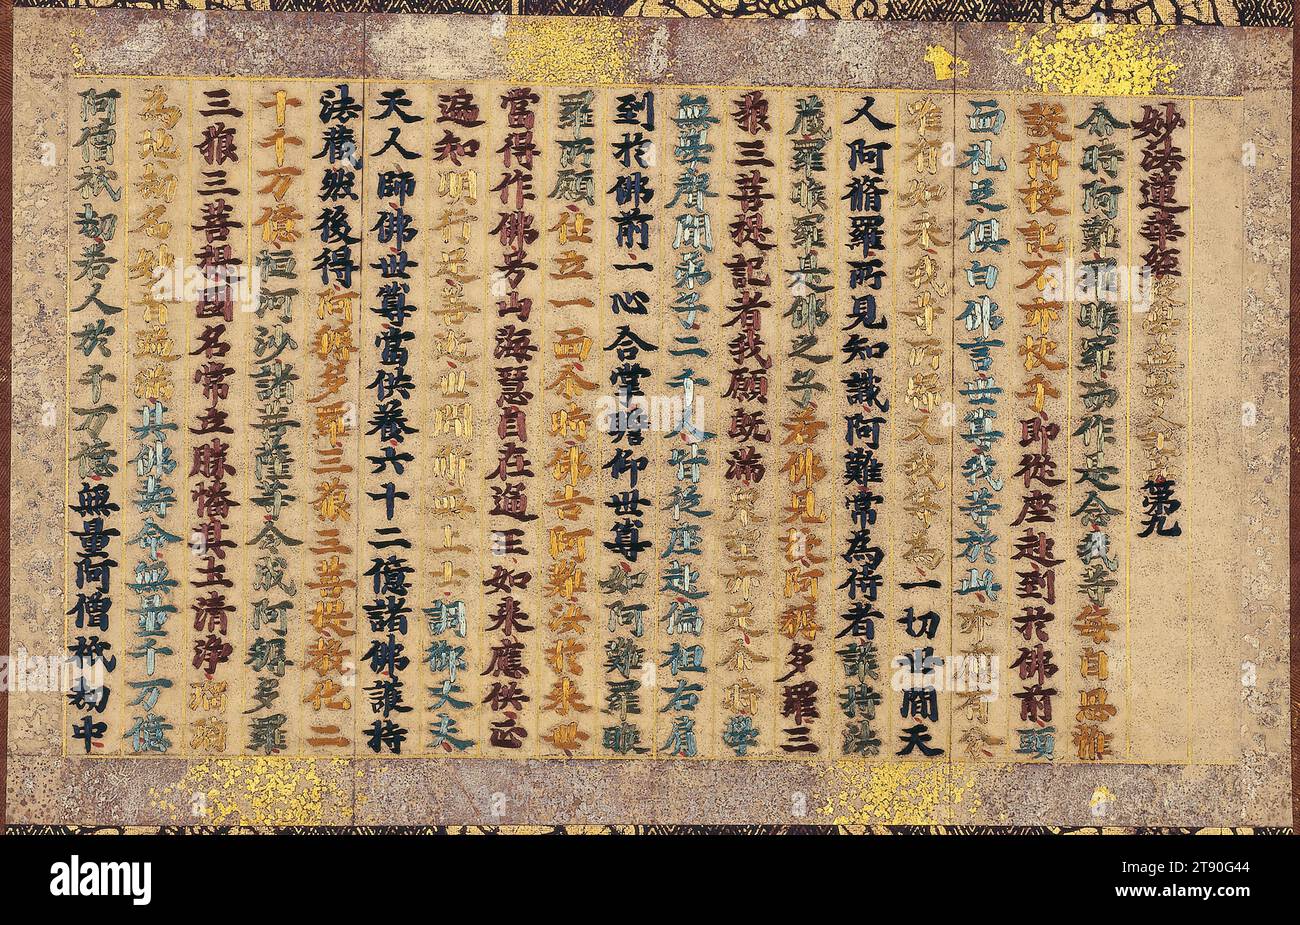 Chapitre 9 du Sutra du Lotus, début du 14e siècle, Japonais inconnu, 9 × 15 3/4 po. (22,86 × 40,01 cm) (image)43 × 22 1/2 po (109,22 × 57,15 cm) (monture, sans rouleau), soie brodée sur papier, Japon, 14e siècle, le Sutra du Lotus enseigne que le salut est accessible à tous les êtres vivants et stipule explicitement que les femmes peuvent aussi devenir des bouddhas. Cet enseignement simple en a fait l'une des écritures bouddhistes les plus influentes et particulièrement populaire, en particulier parmi les femmes. On sait très peu de choses sur la production précoce de sutras bouddhistes brodés comme celui-ci. Banque D'Images